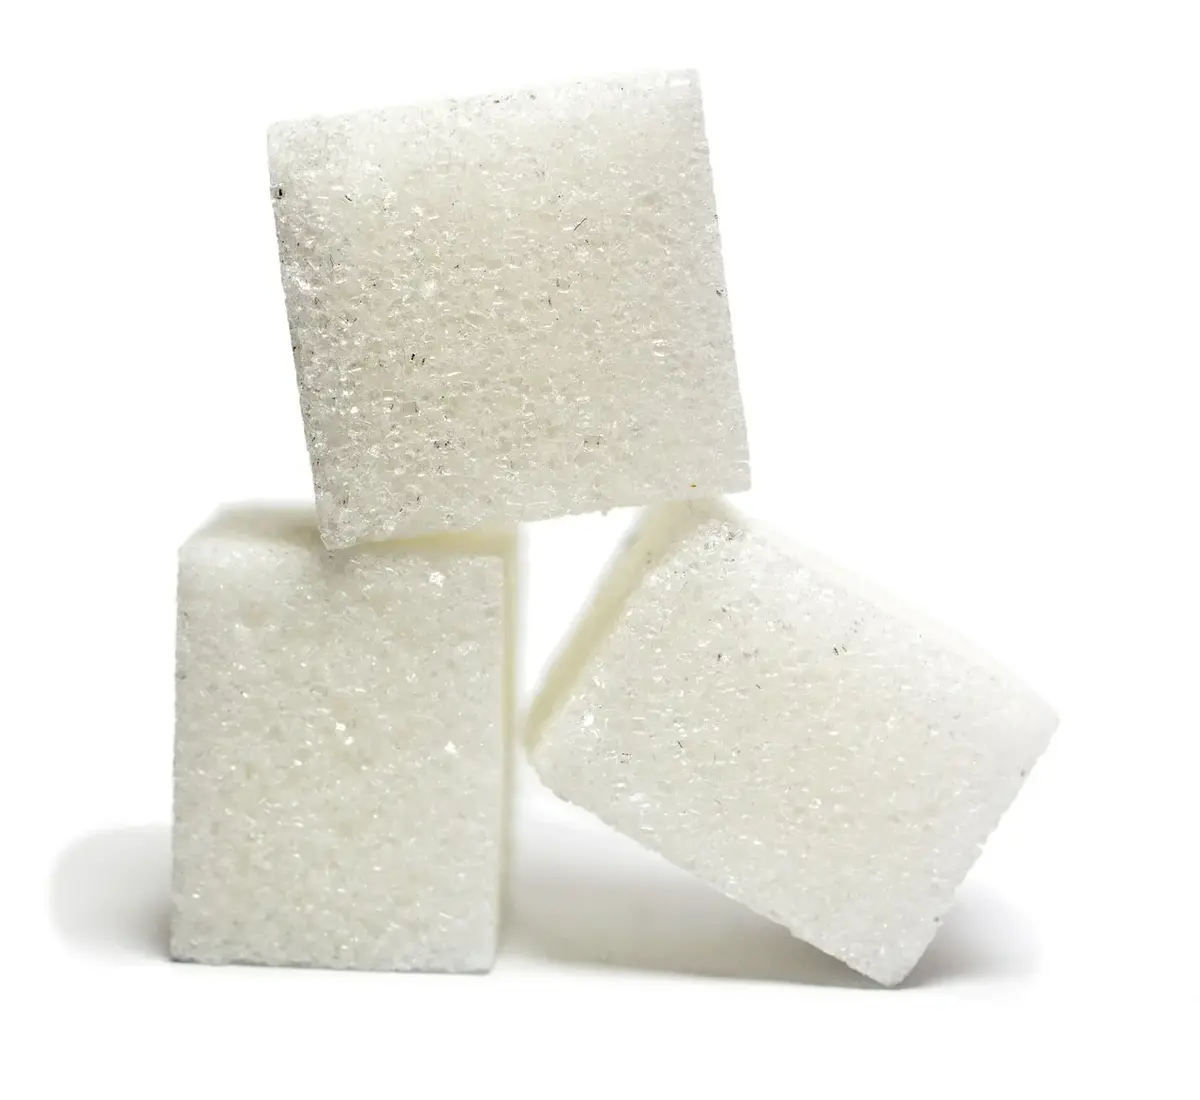 5 powodów, dla których warto zrezygnować z cukru